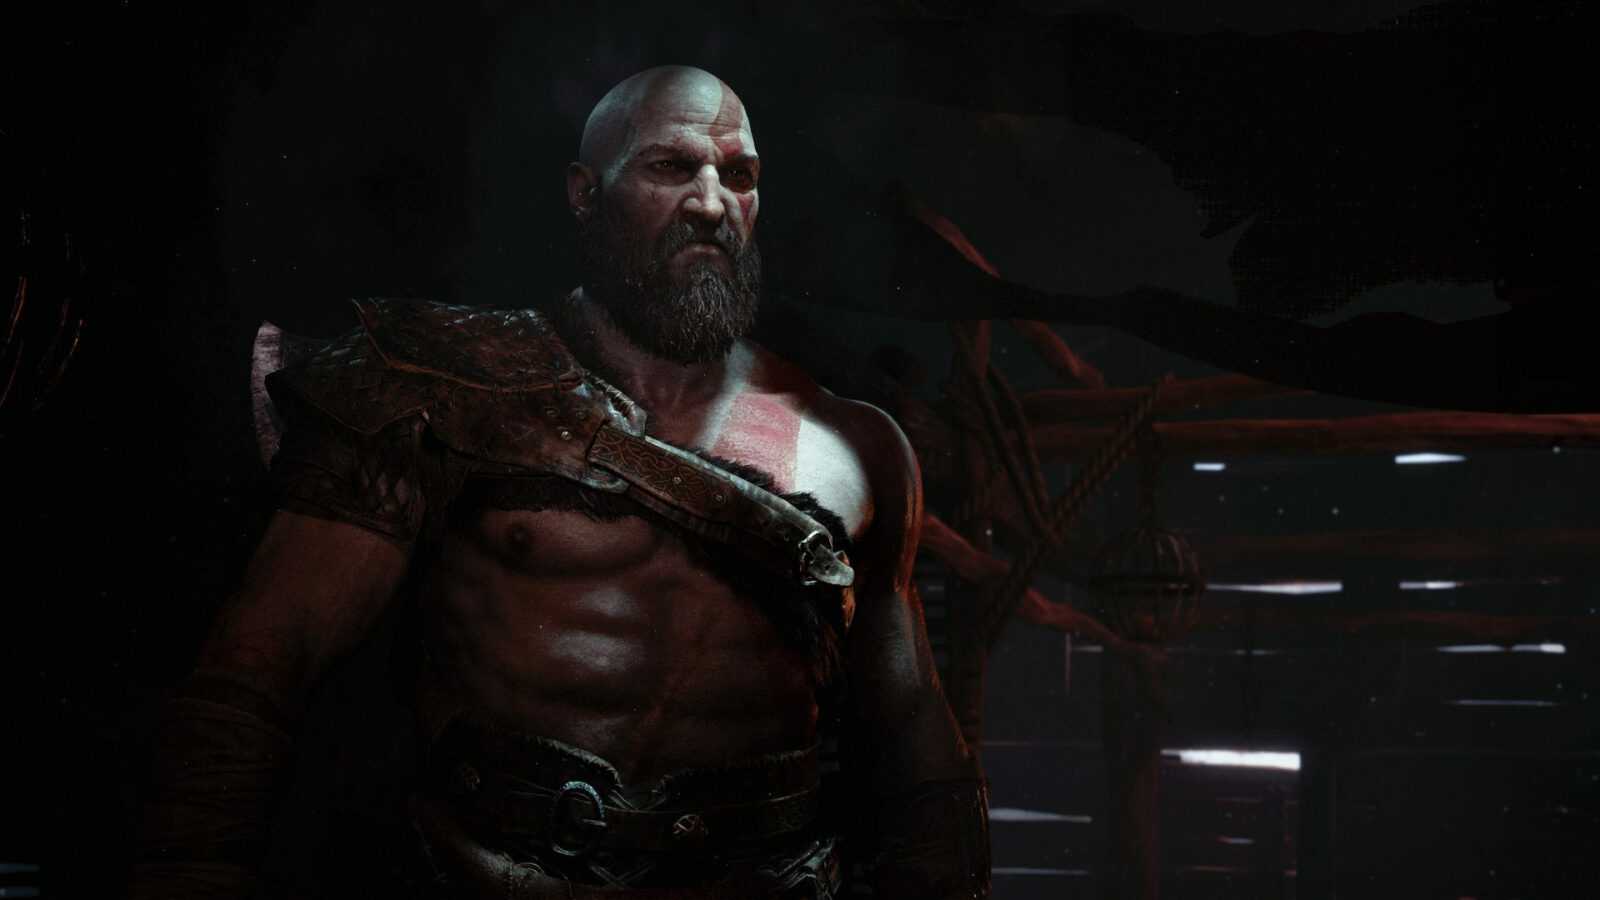 Sony conferma che God of War non prevede un adattamento cinematografico o televisivo